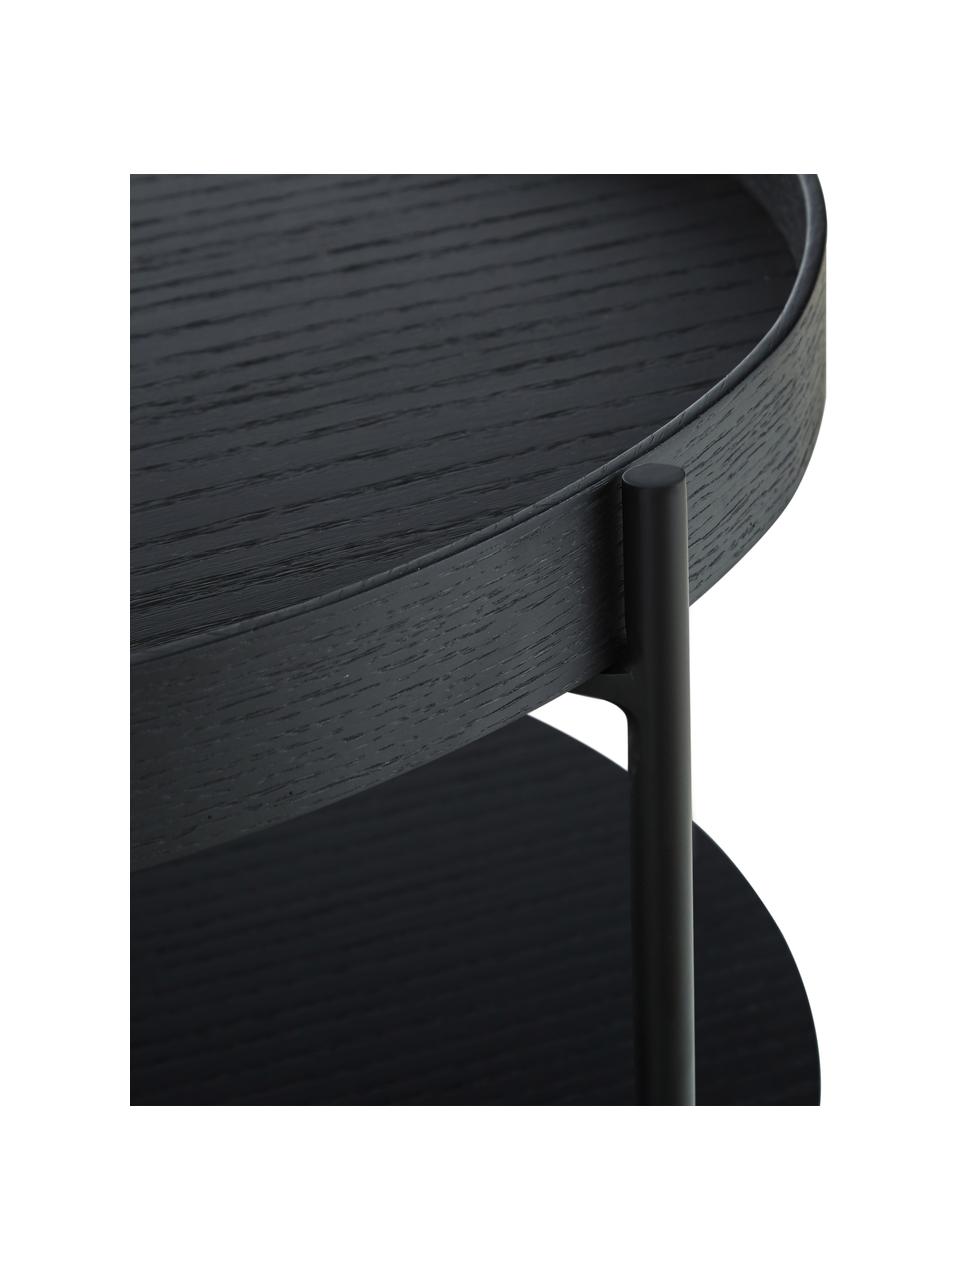 Table basse ronde noire Renee, Noir, Ø 69 x haut. 39 cm